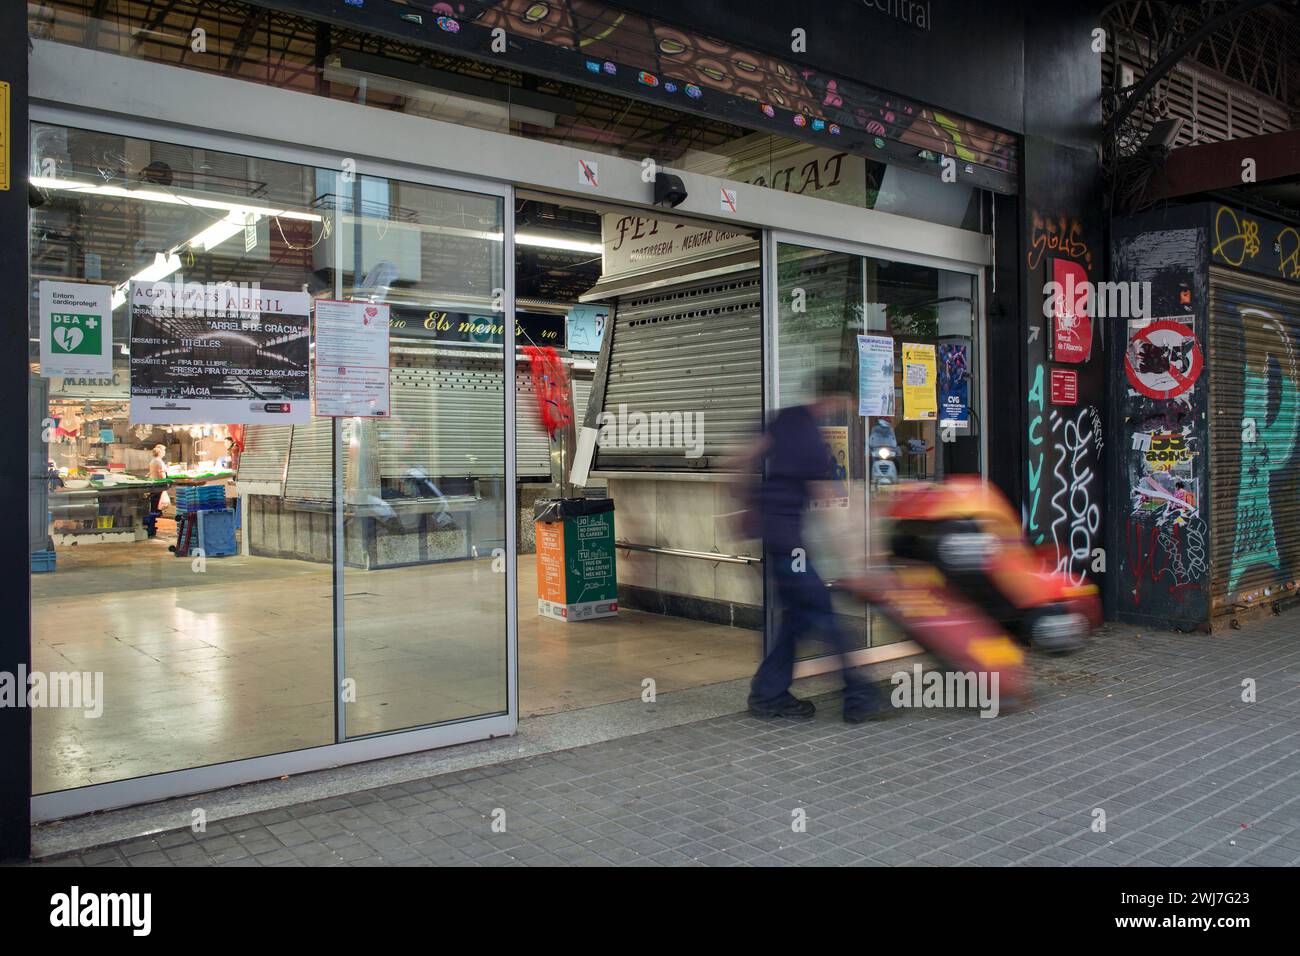 Homme obtenant un tour d'enfants dans l'ancien marché central d'Abaceria pendant l'heure de fermeture à Barcelone Banque D'Images